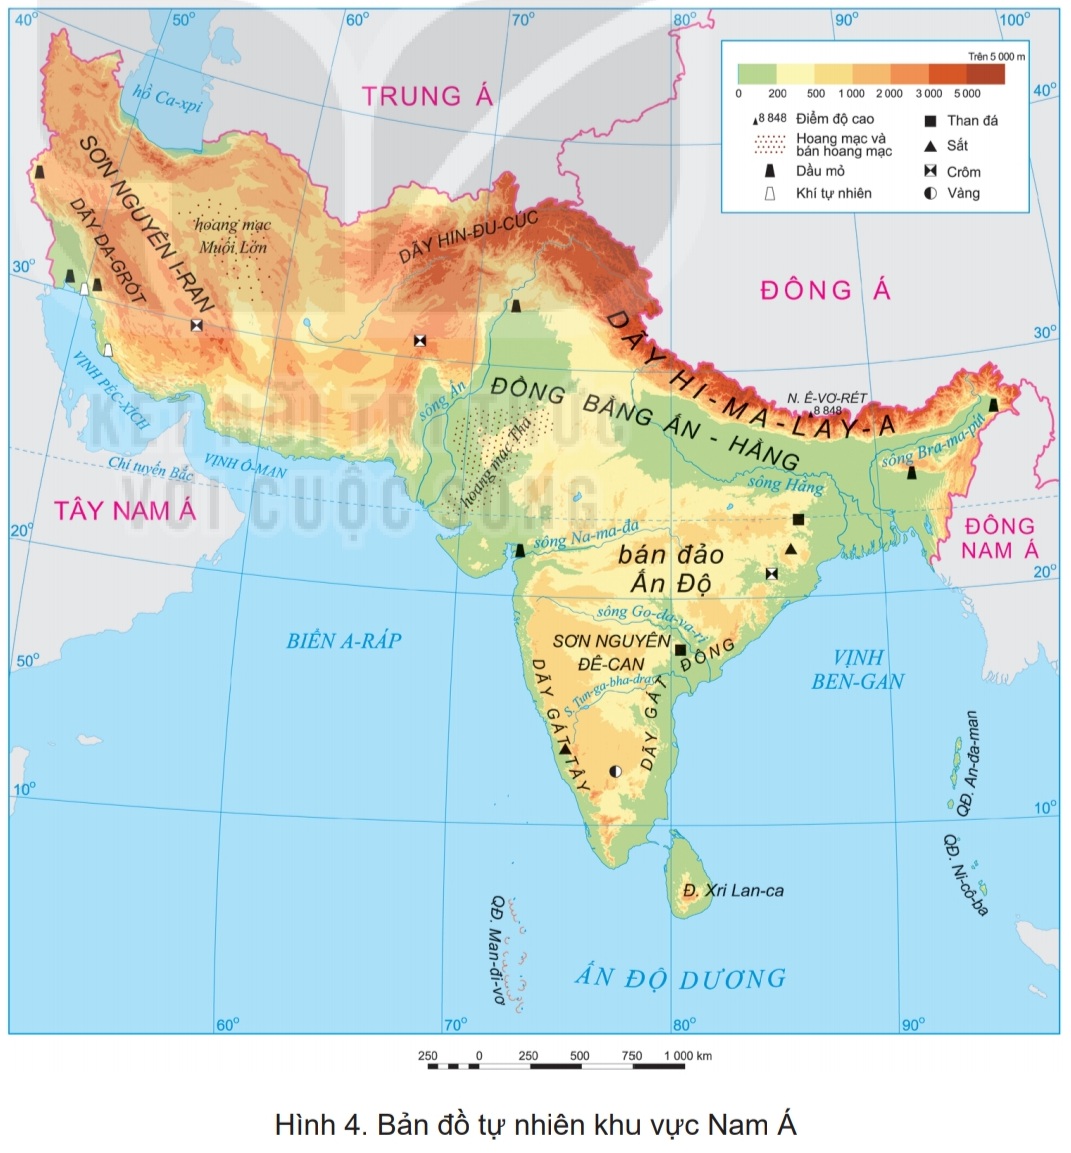 Với bản đồ chi tiết và sự giải thích tinh tế, một chuyến xem bản đồ này sẽ giúp khám phá văn hóa và lịch sử các quốc gia trên đất châu Á.